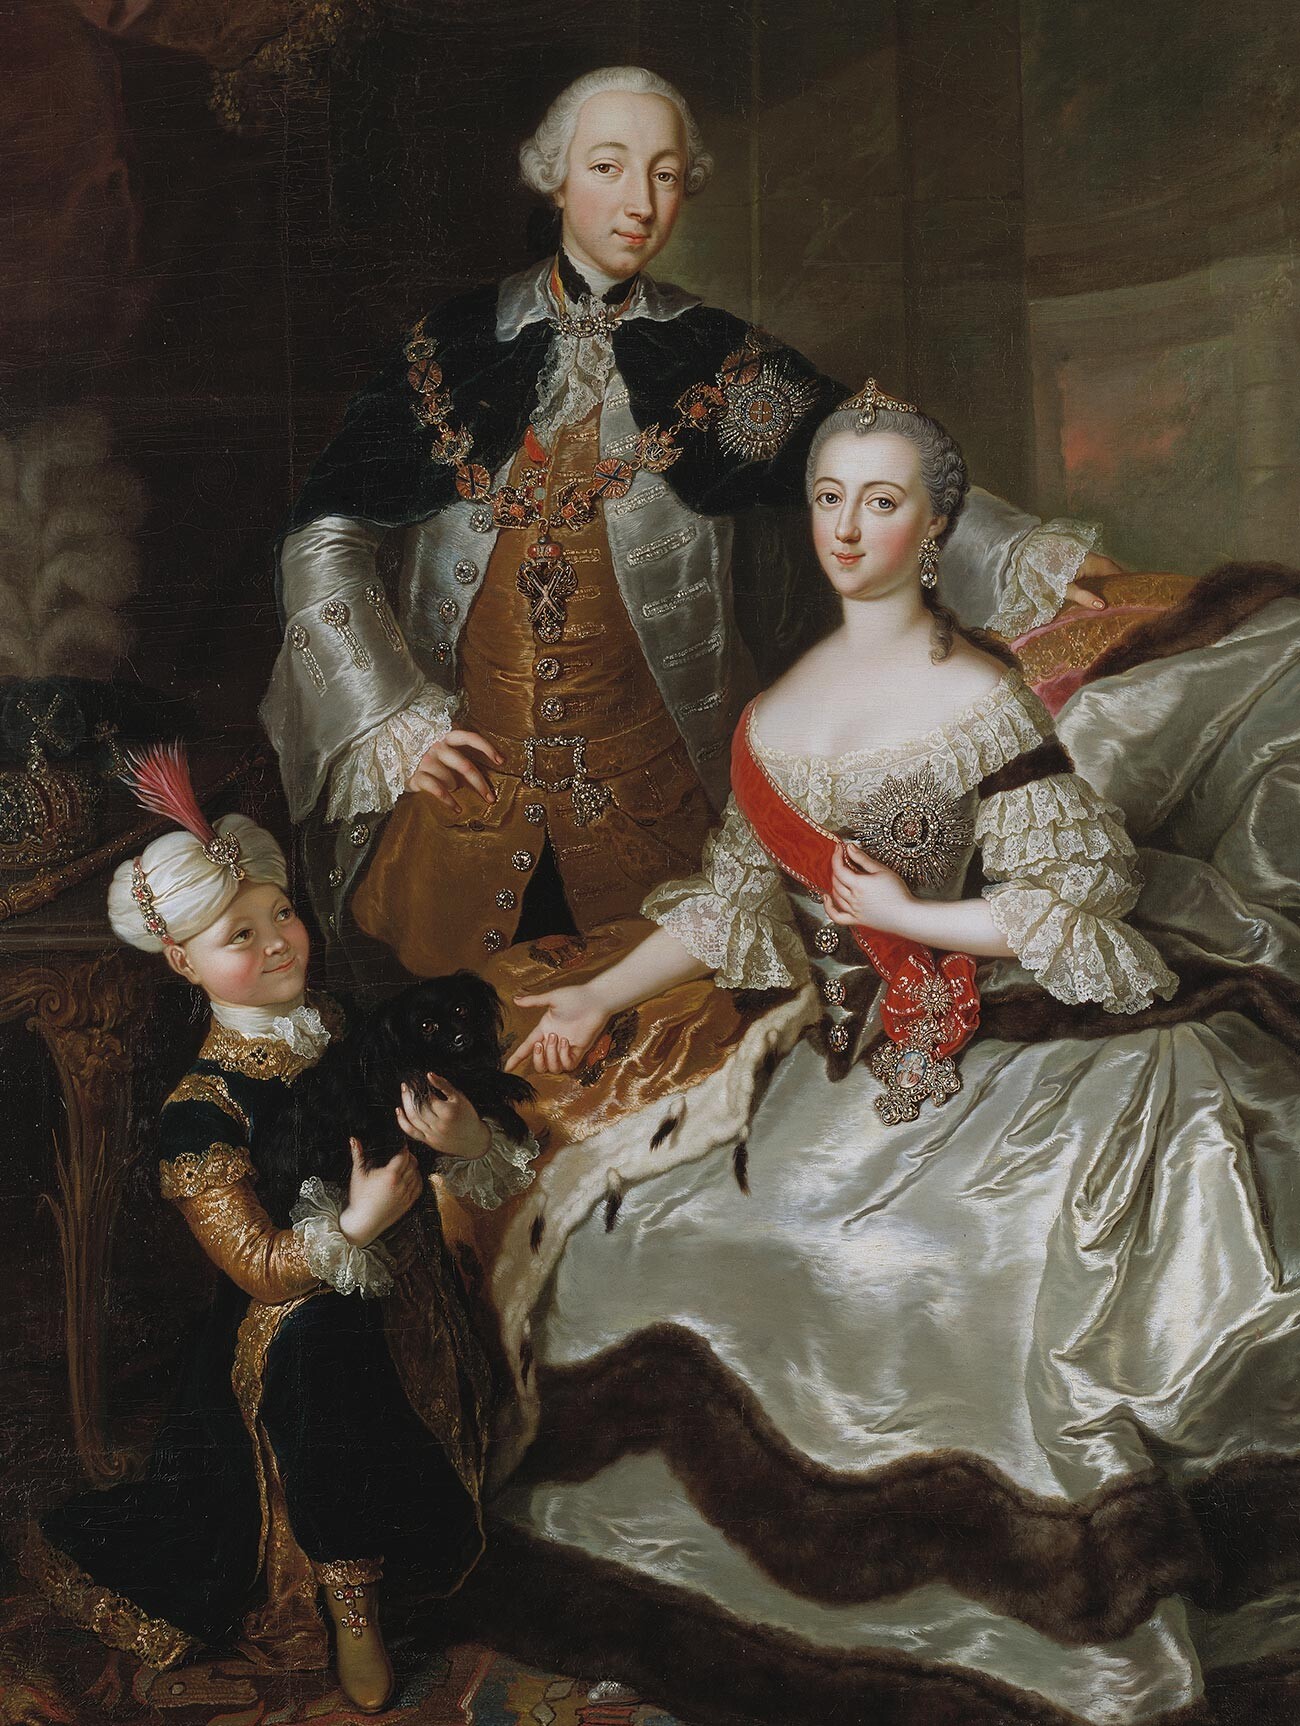 Peter III and Catherine II of Russia